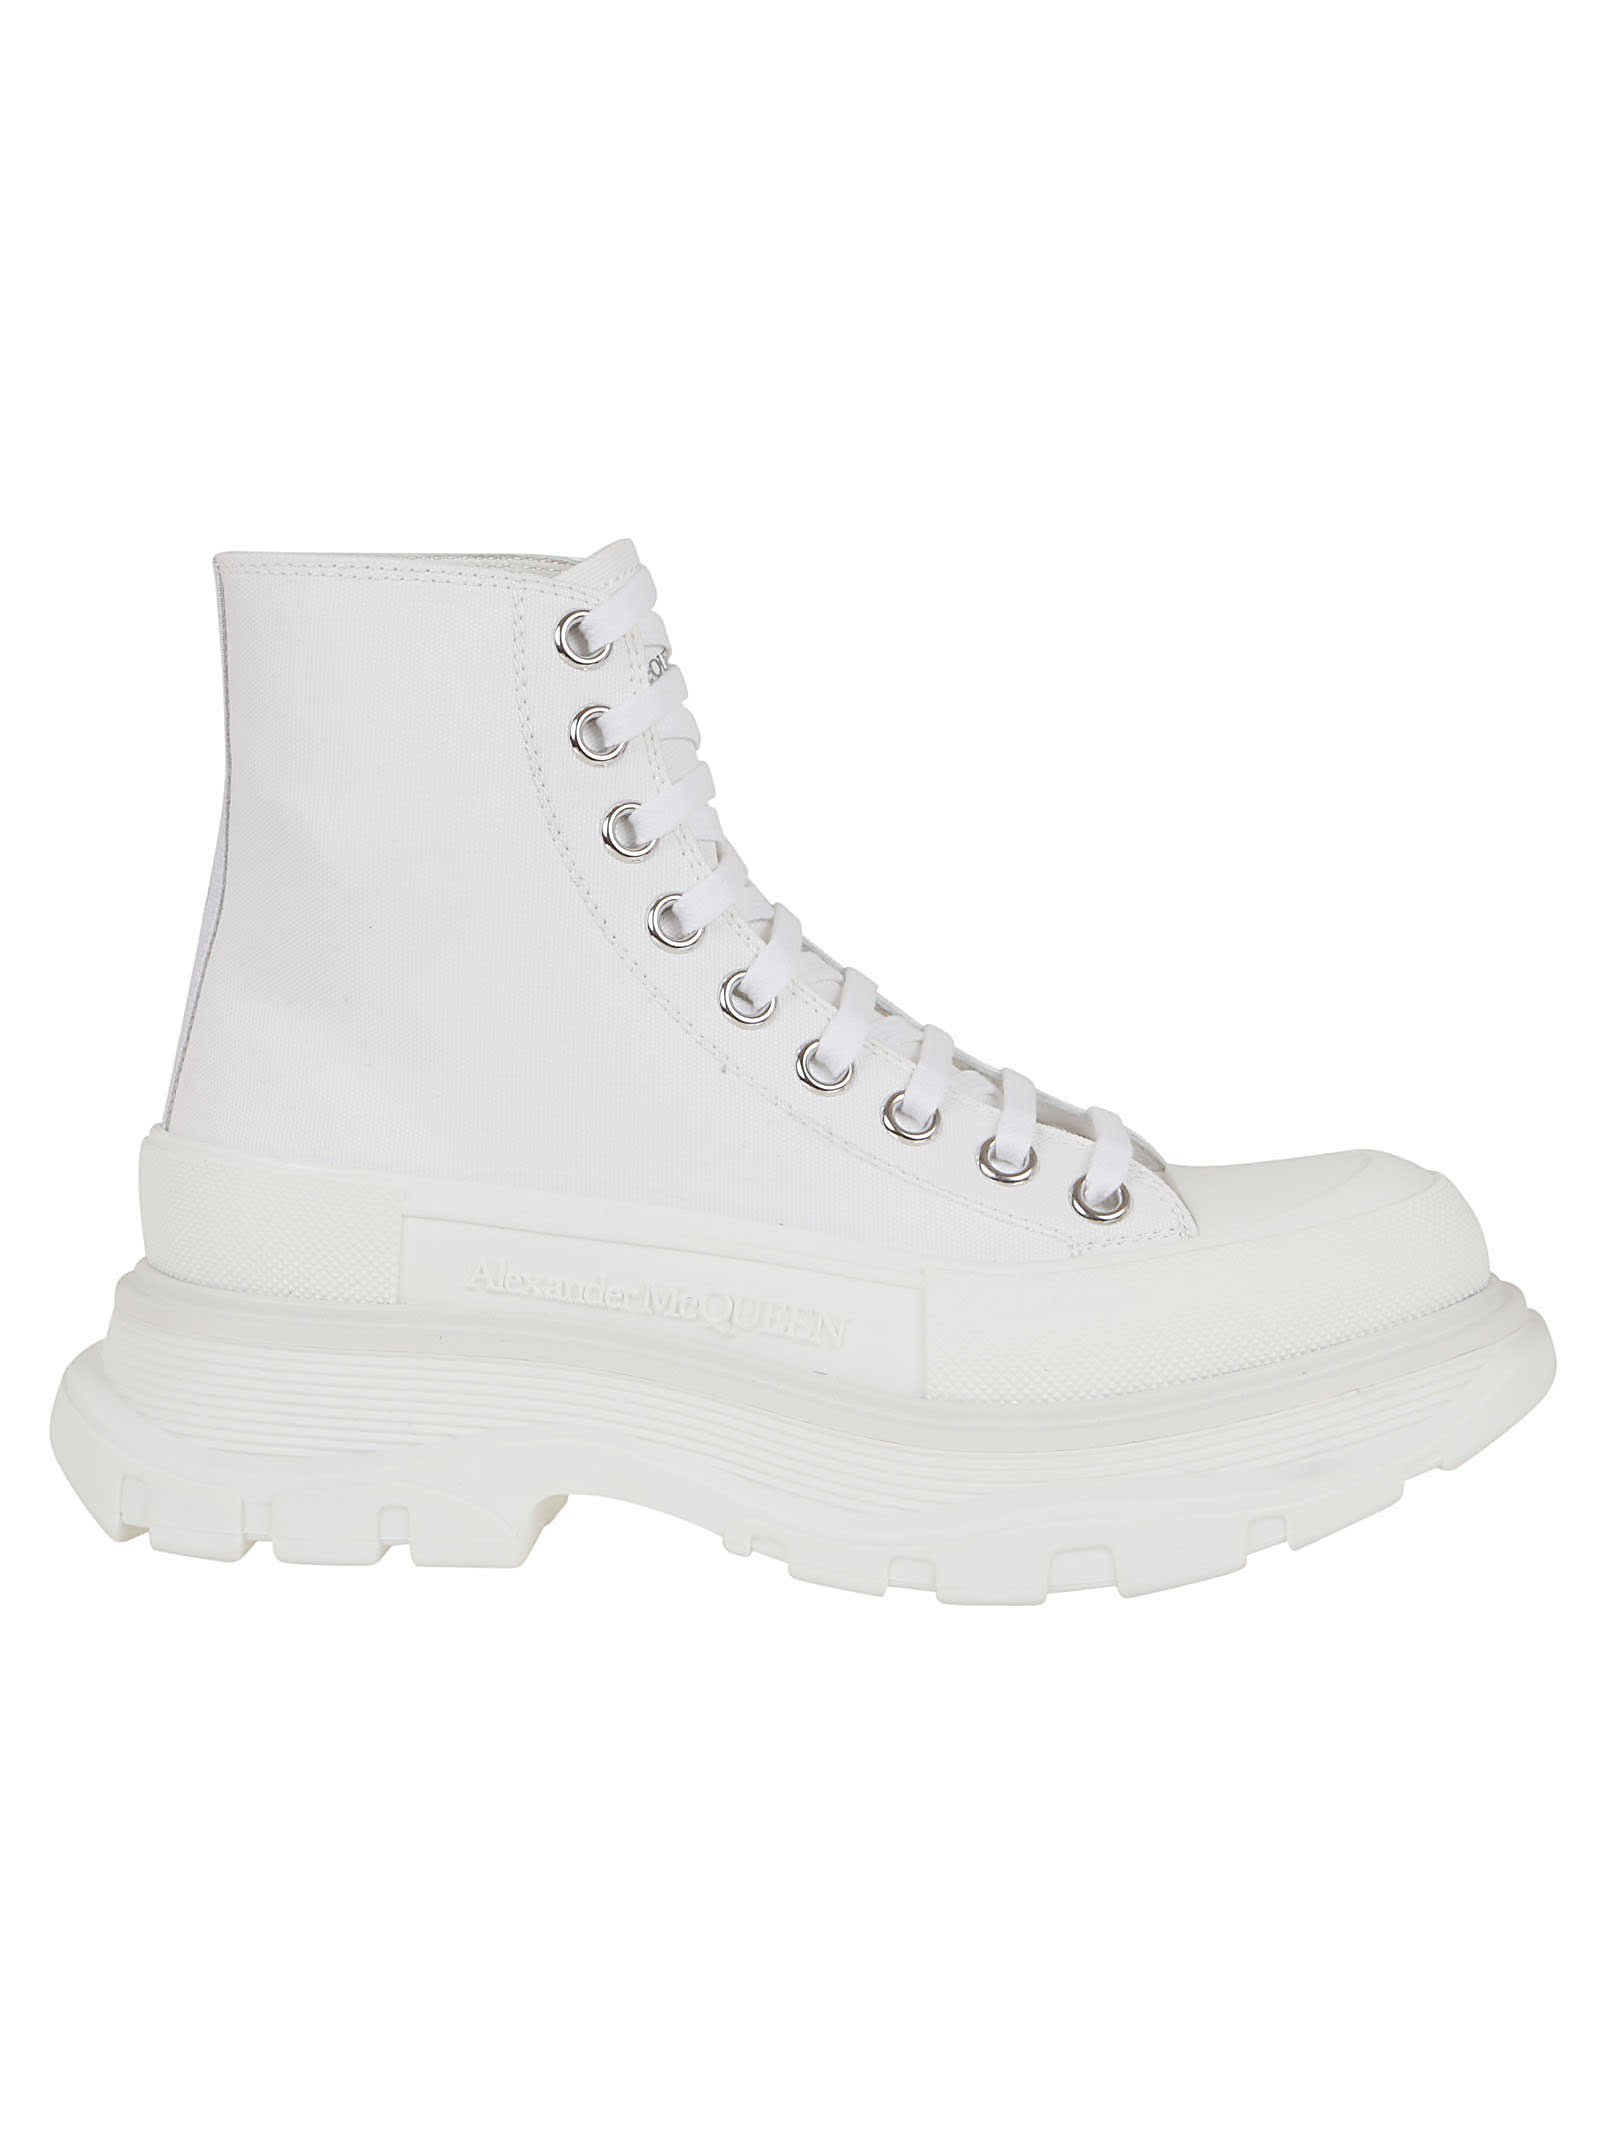 Buy Alexander McQueen Tread Slick Boot online, shop Alexander McQueen shoes with free shipping